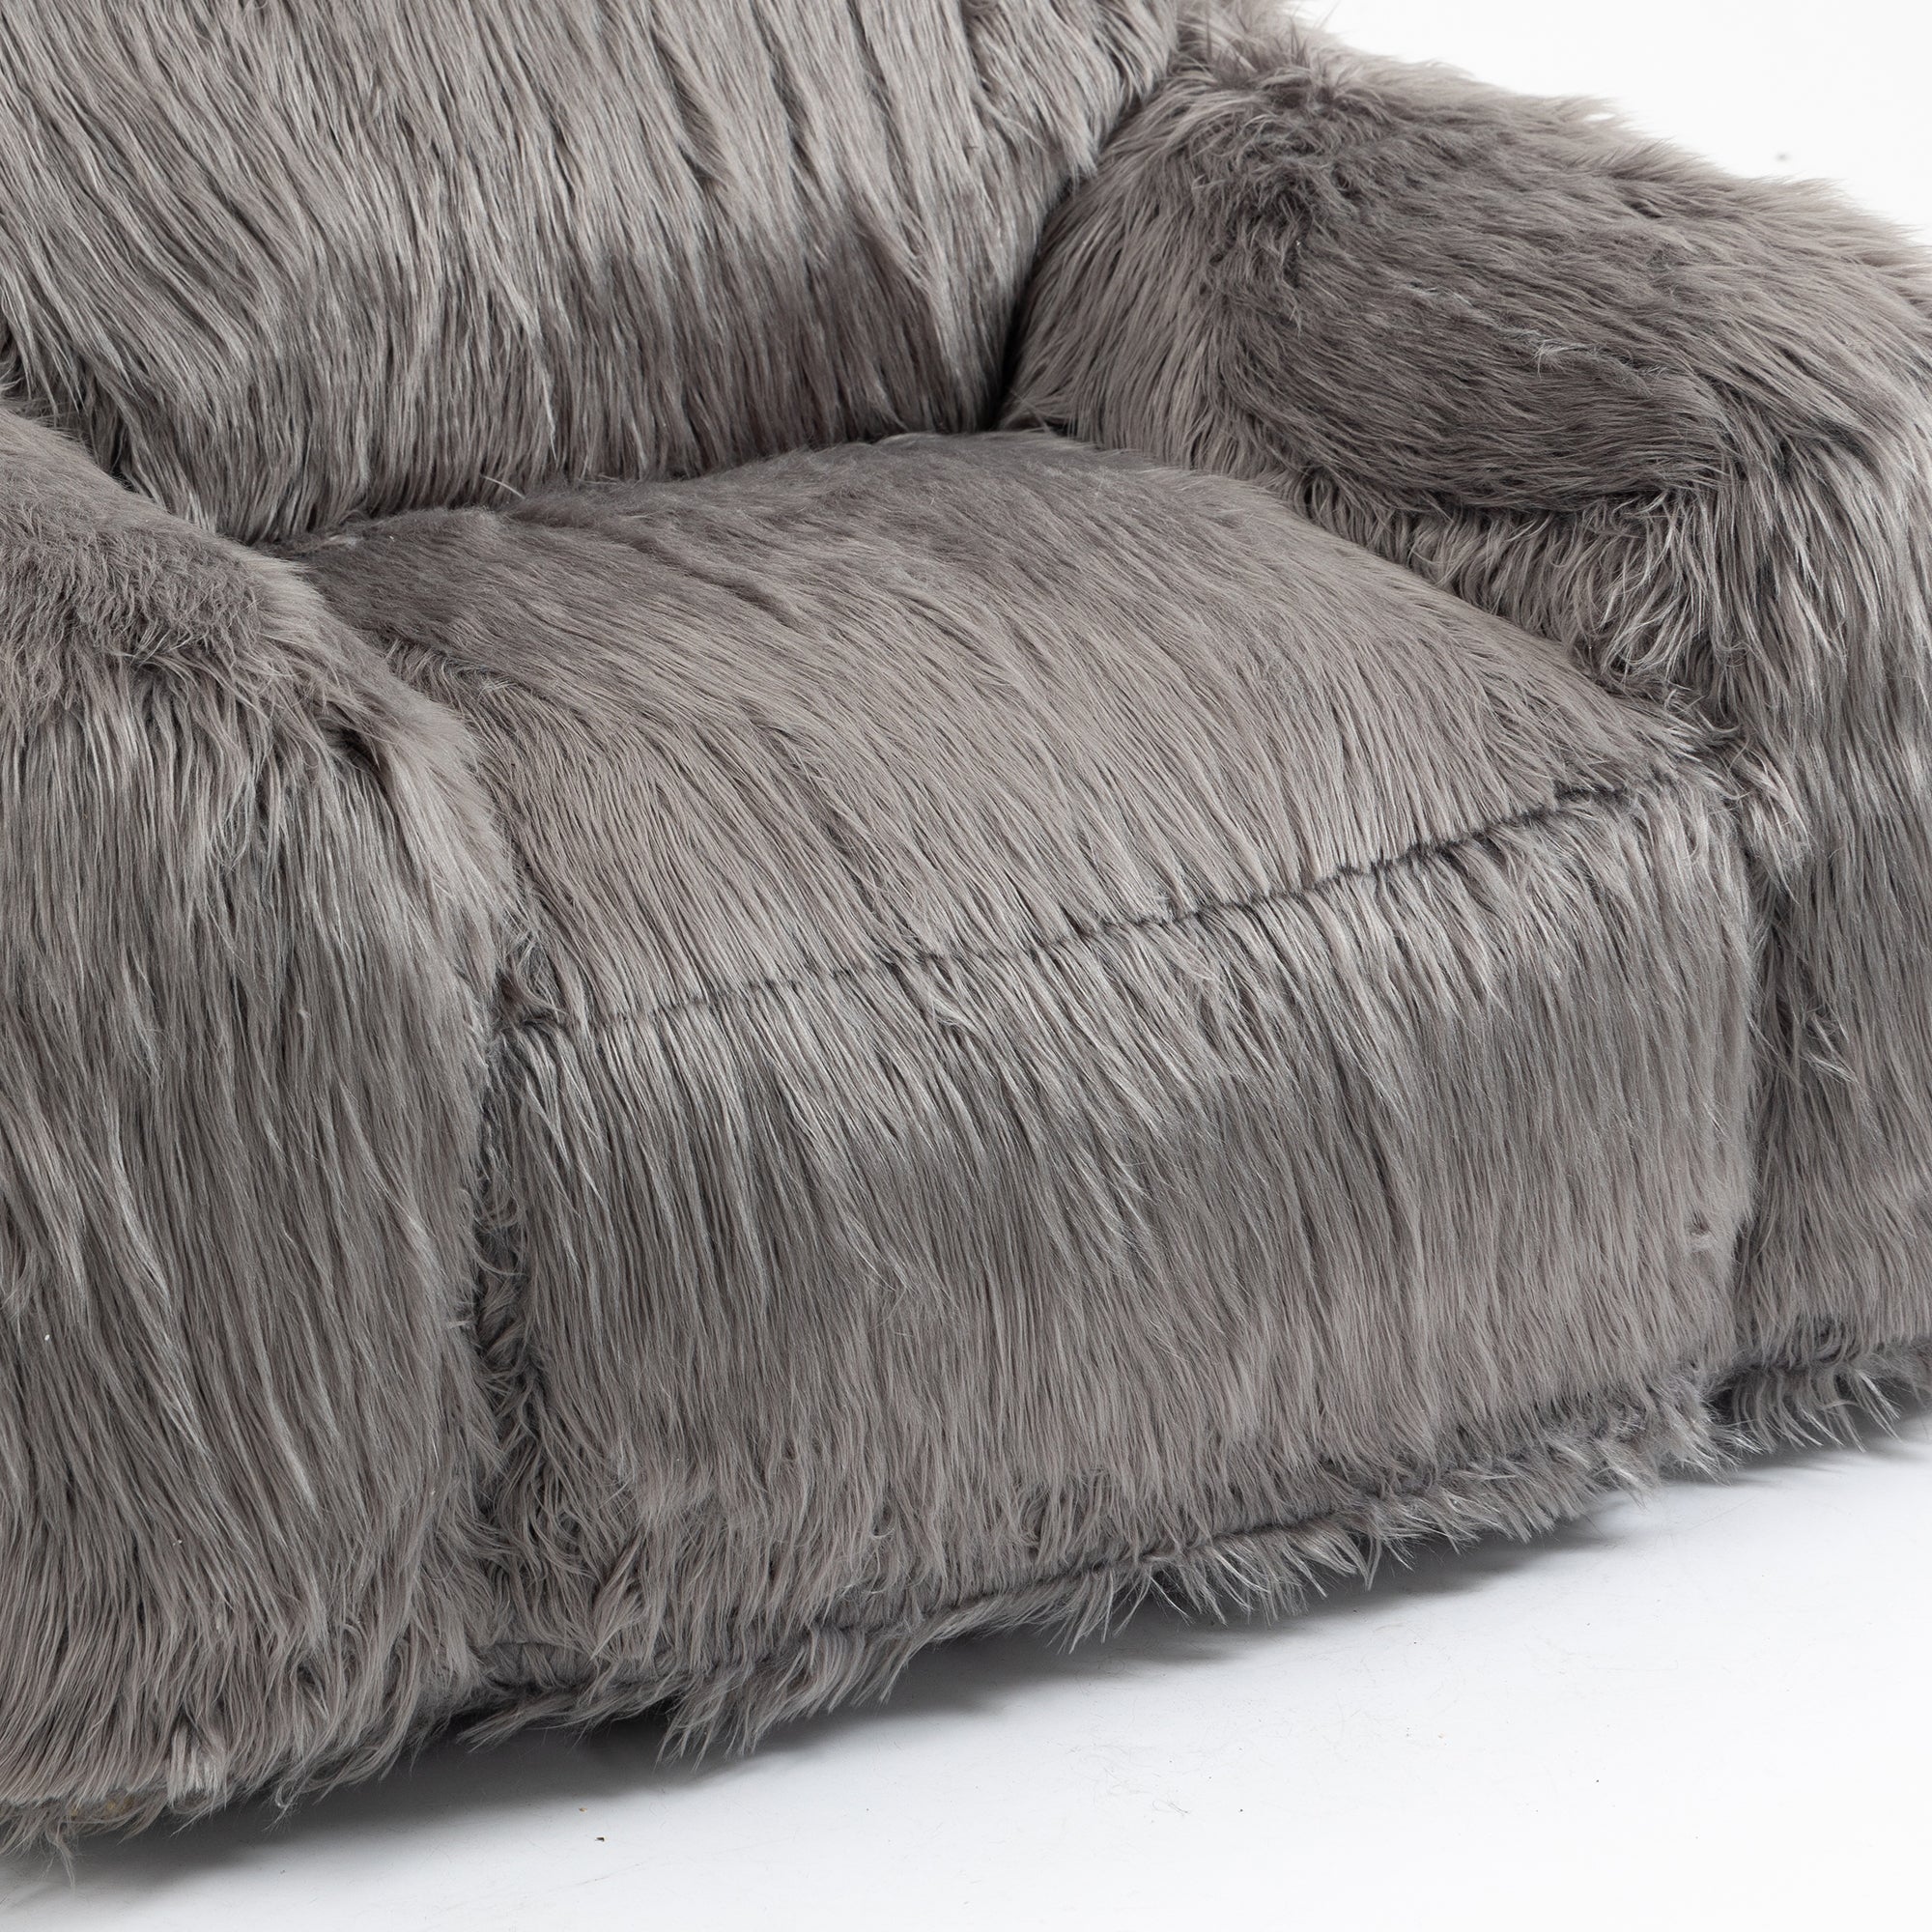 Bean bag chair lazy long hair sofa bean bag chair grey-faux fur